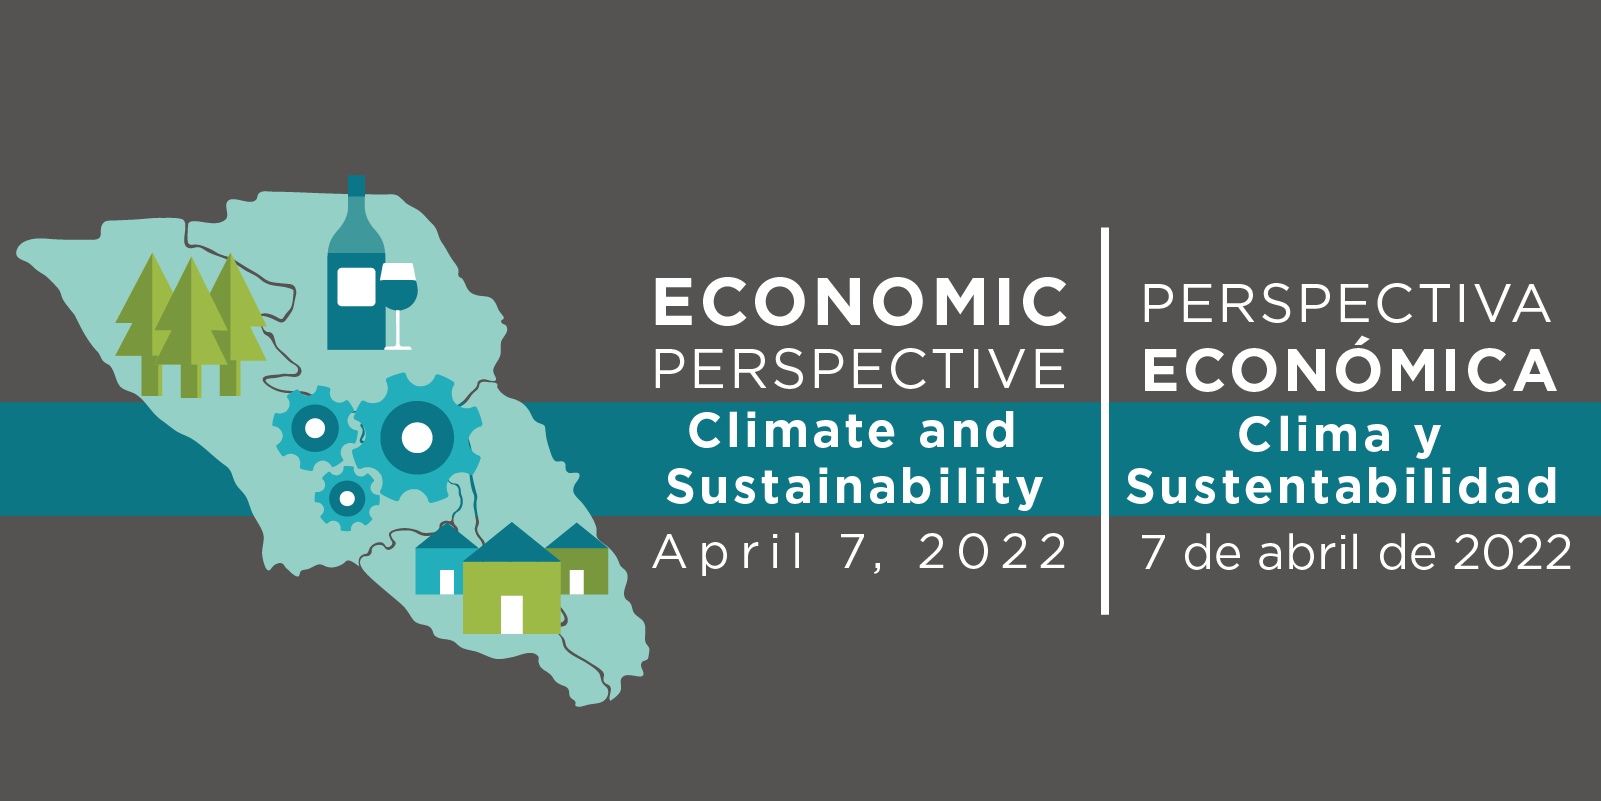 Economic Perspective Climate and Sustainability April 7, 2022. Perspectiva Económica: Clima y Sustentabilidad 7 de abril de 2022